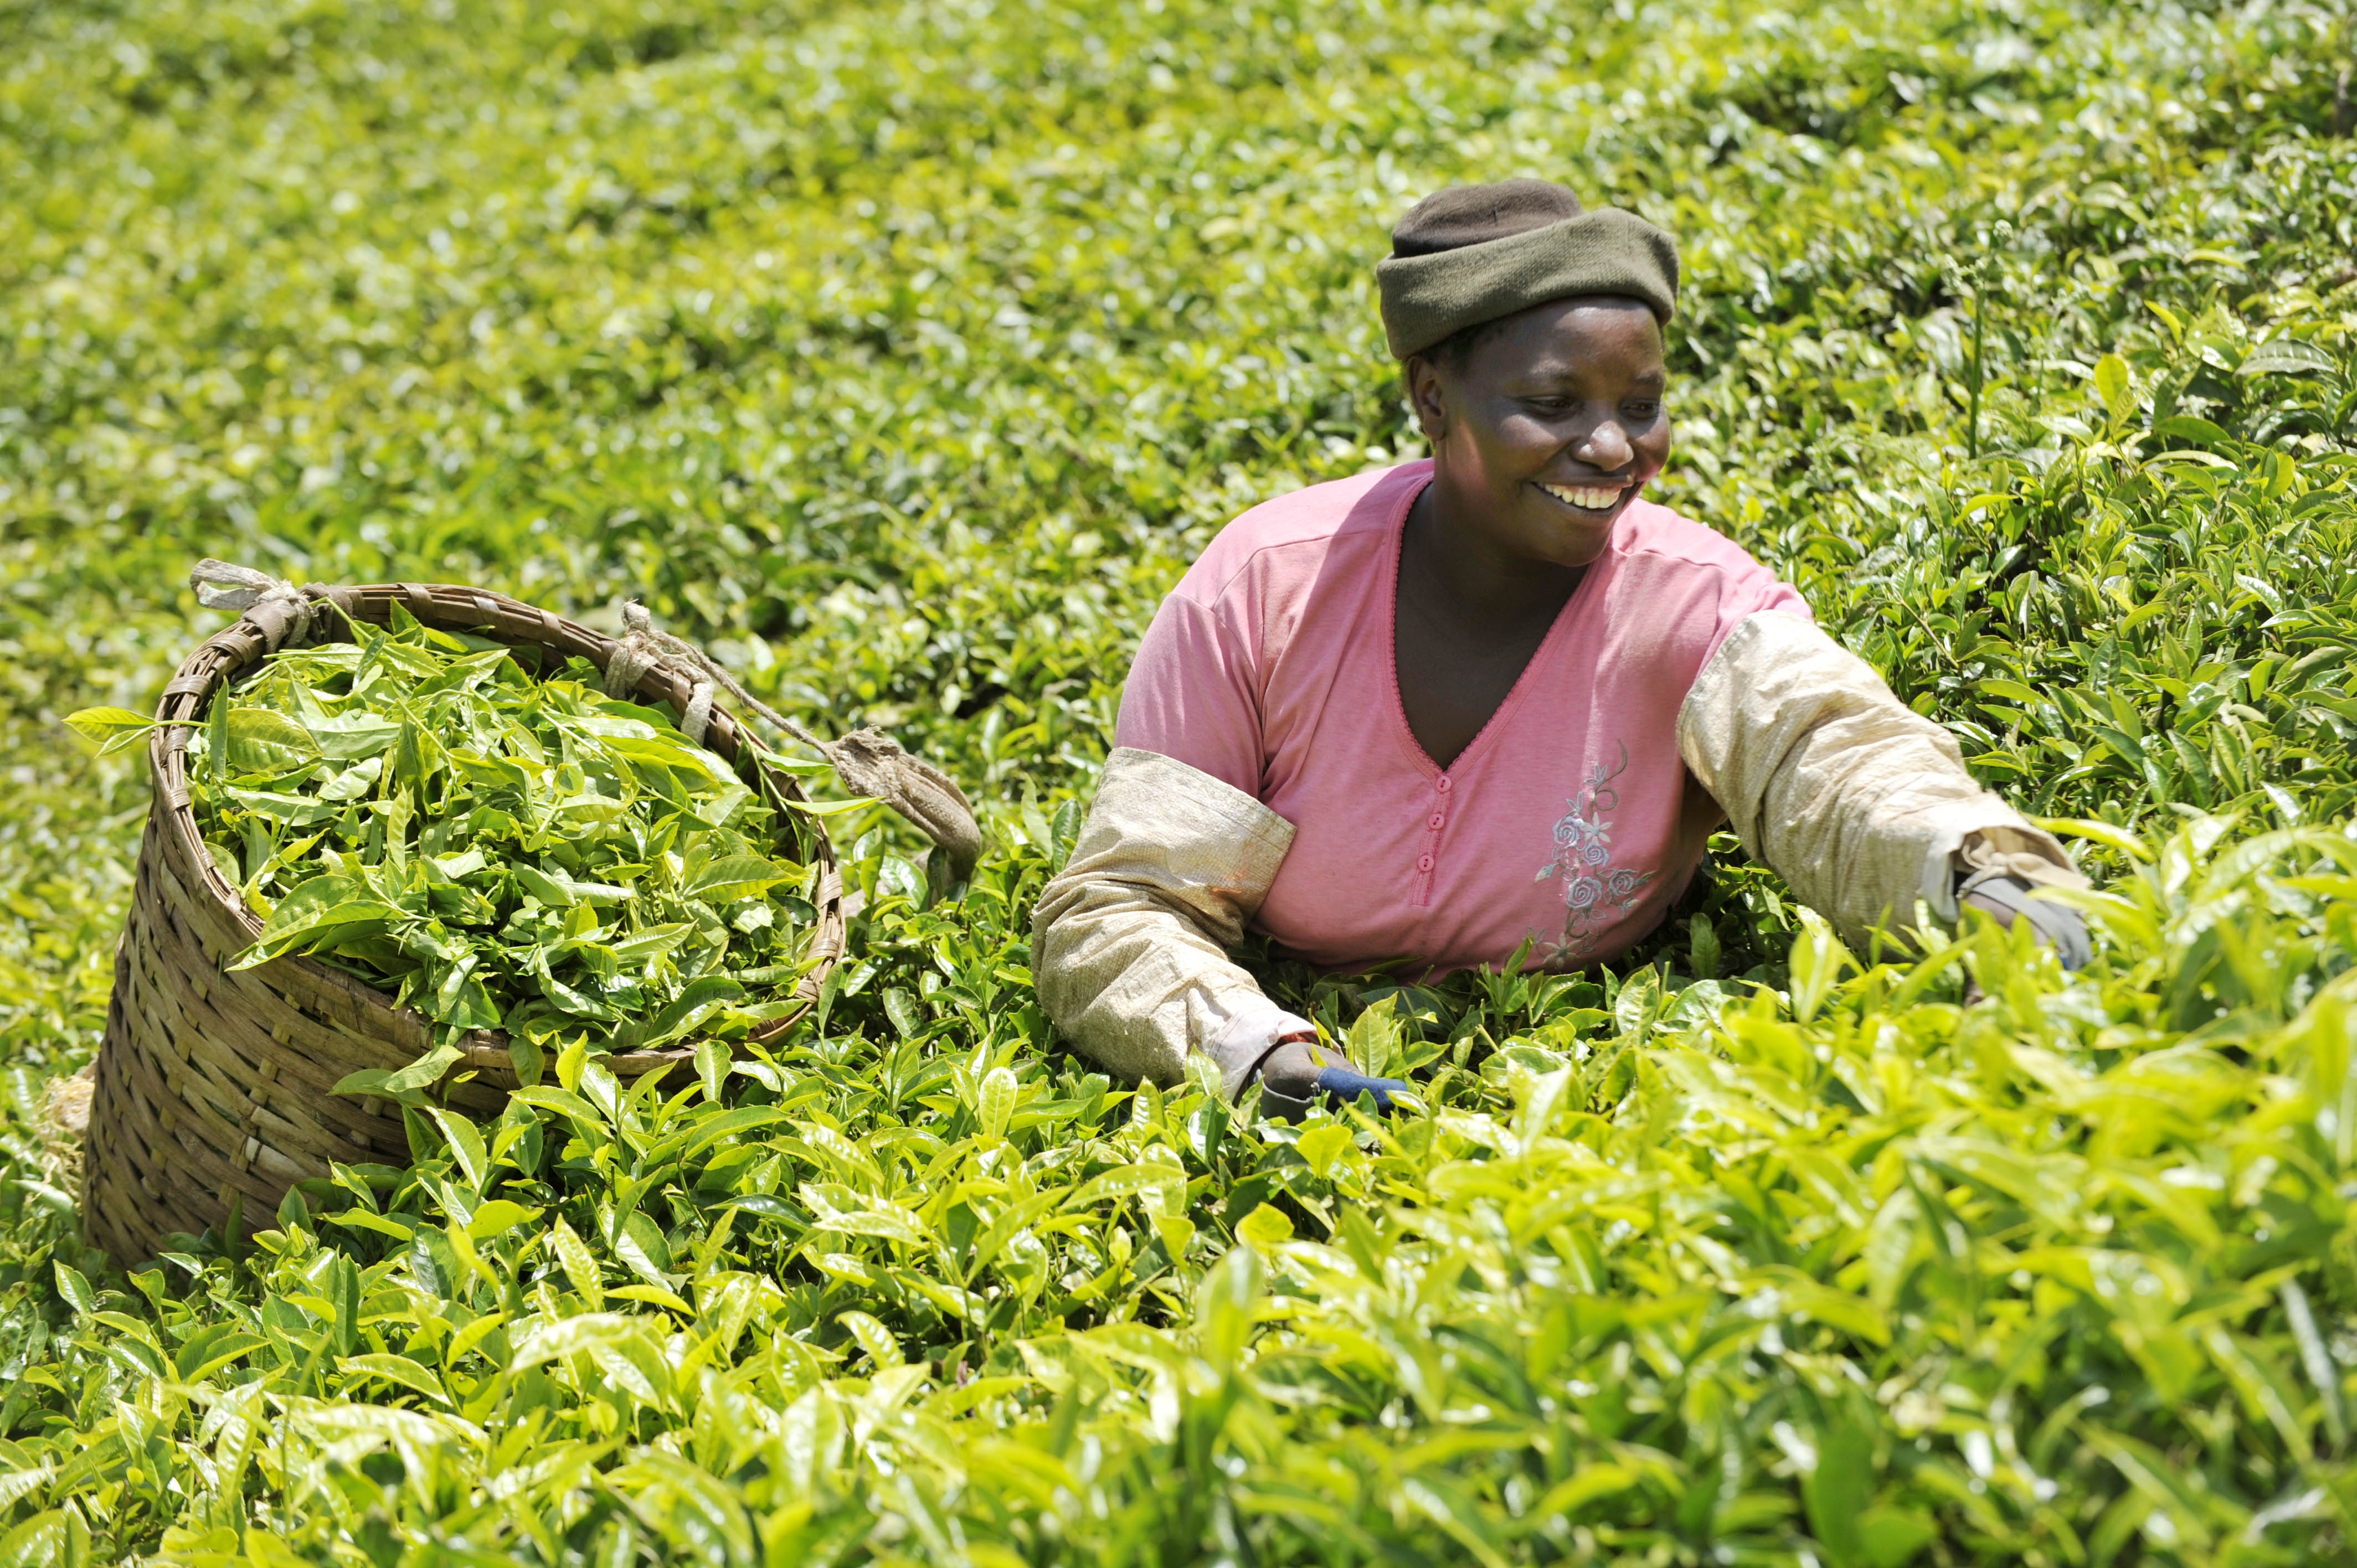 En ny rapport lansert på COP15 viser at en «grønn» økonomi er nødvendig for å sikre rettferdige og inklusive arbeidsmuligheter for alle. Photo: ILO/M. Crozet.